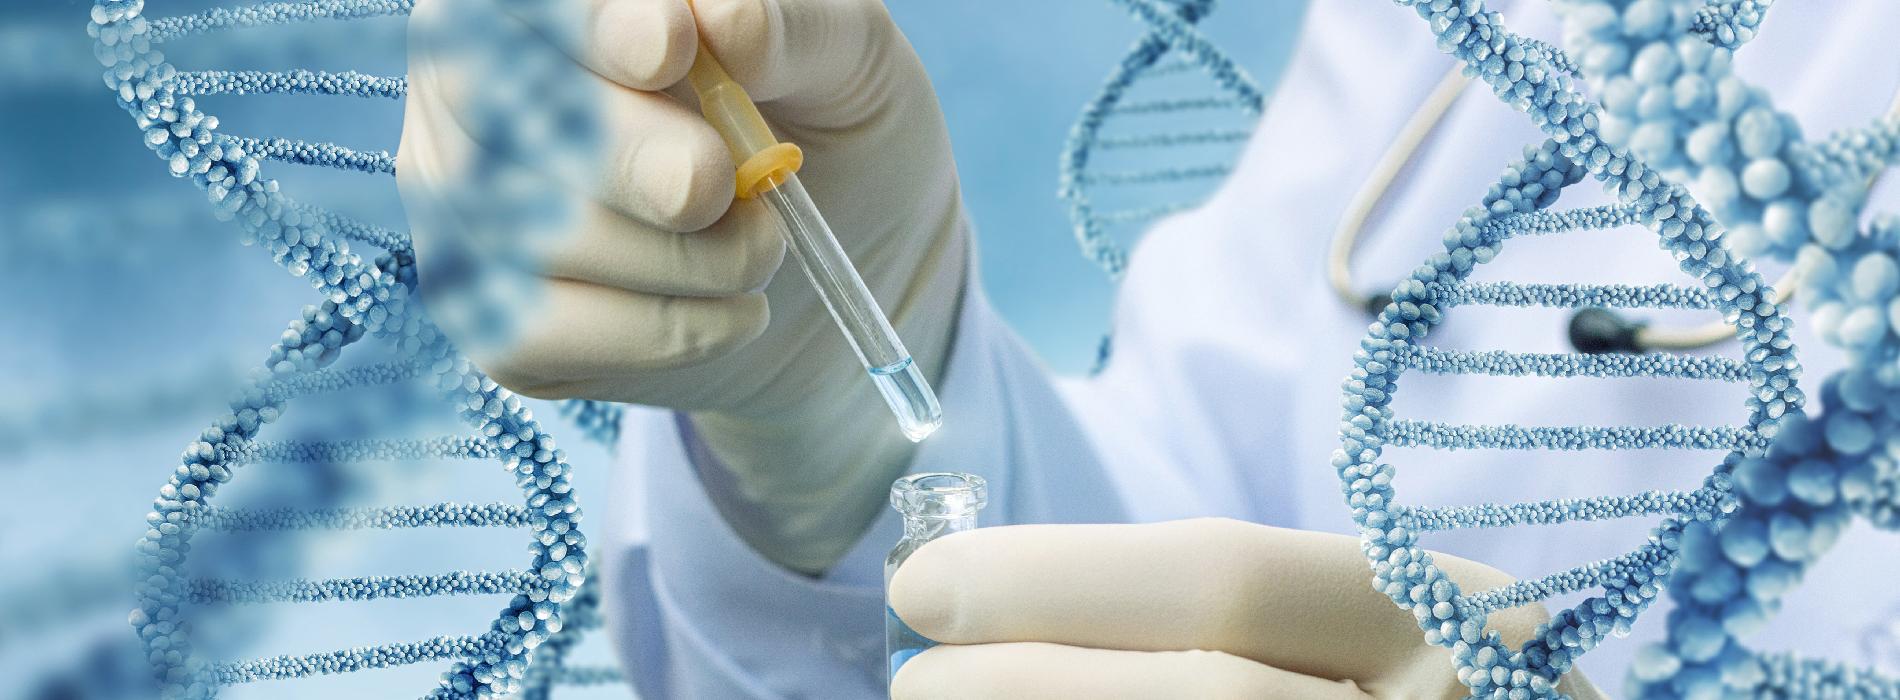 Jaki jest koszt badania DNA?